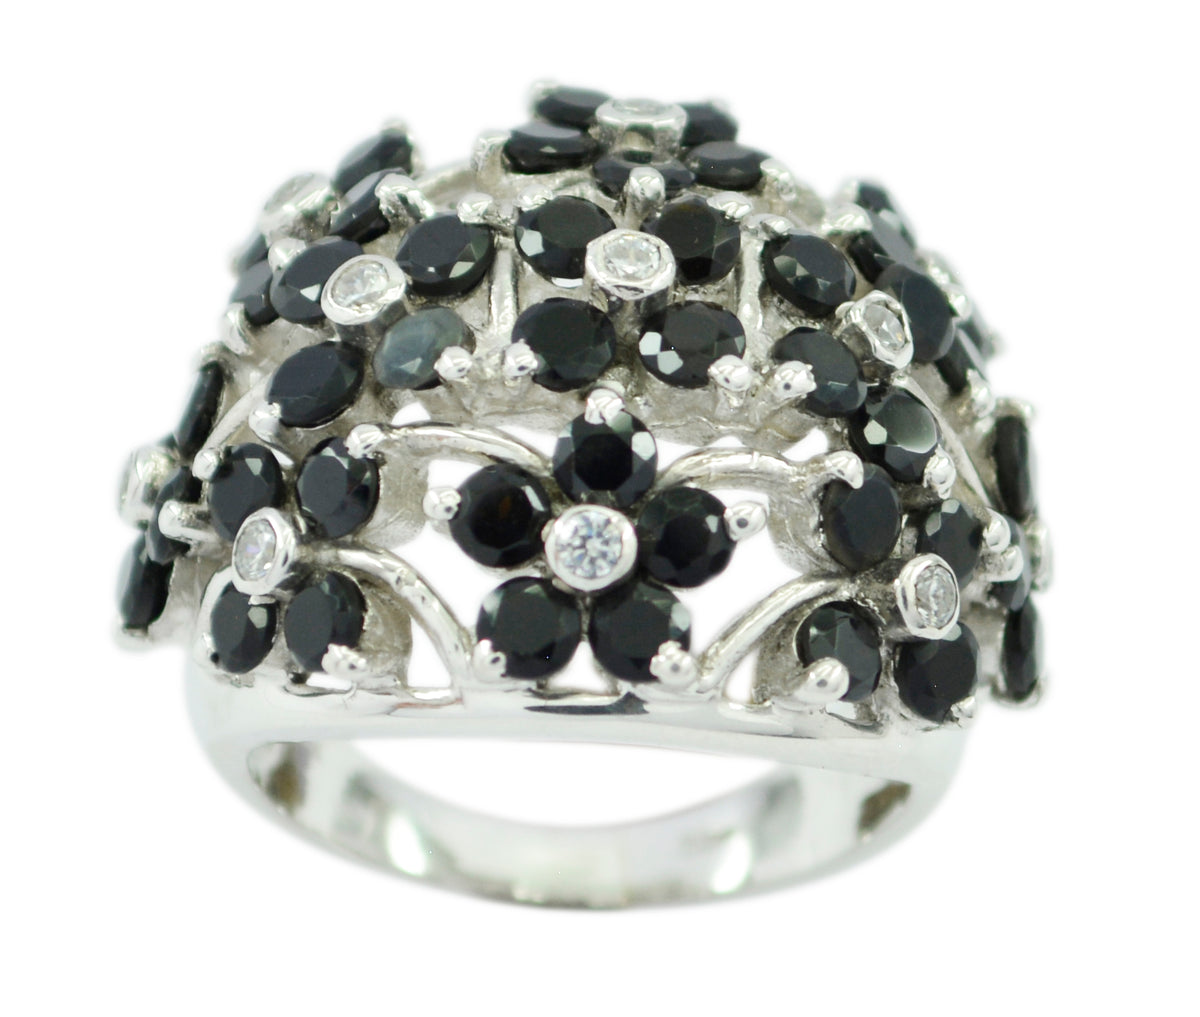 Splendiferous Gem Black Onyx Solid Silver Rings Jewelry For Girlfriend